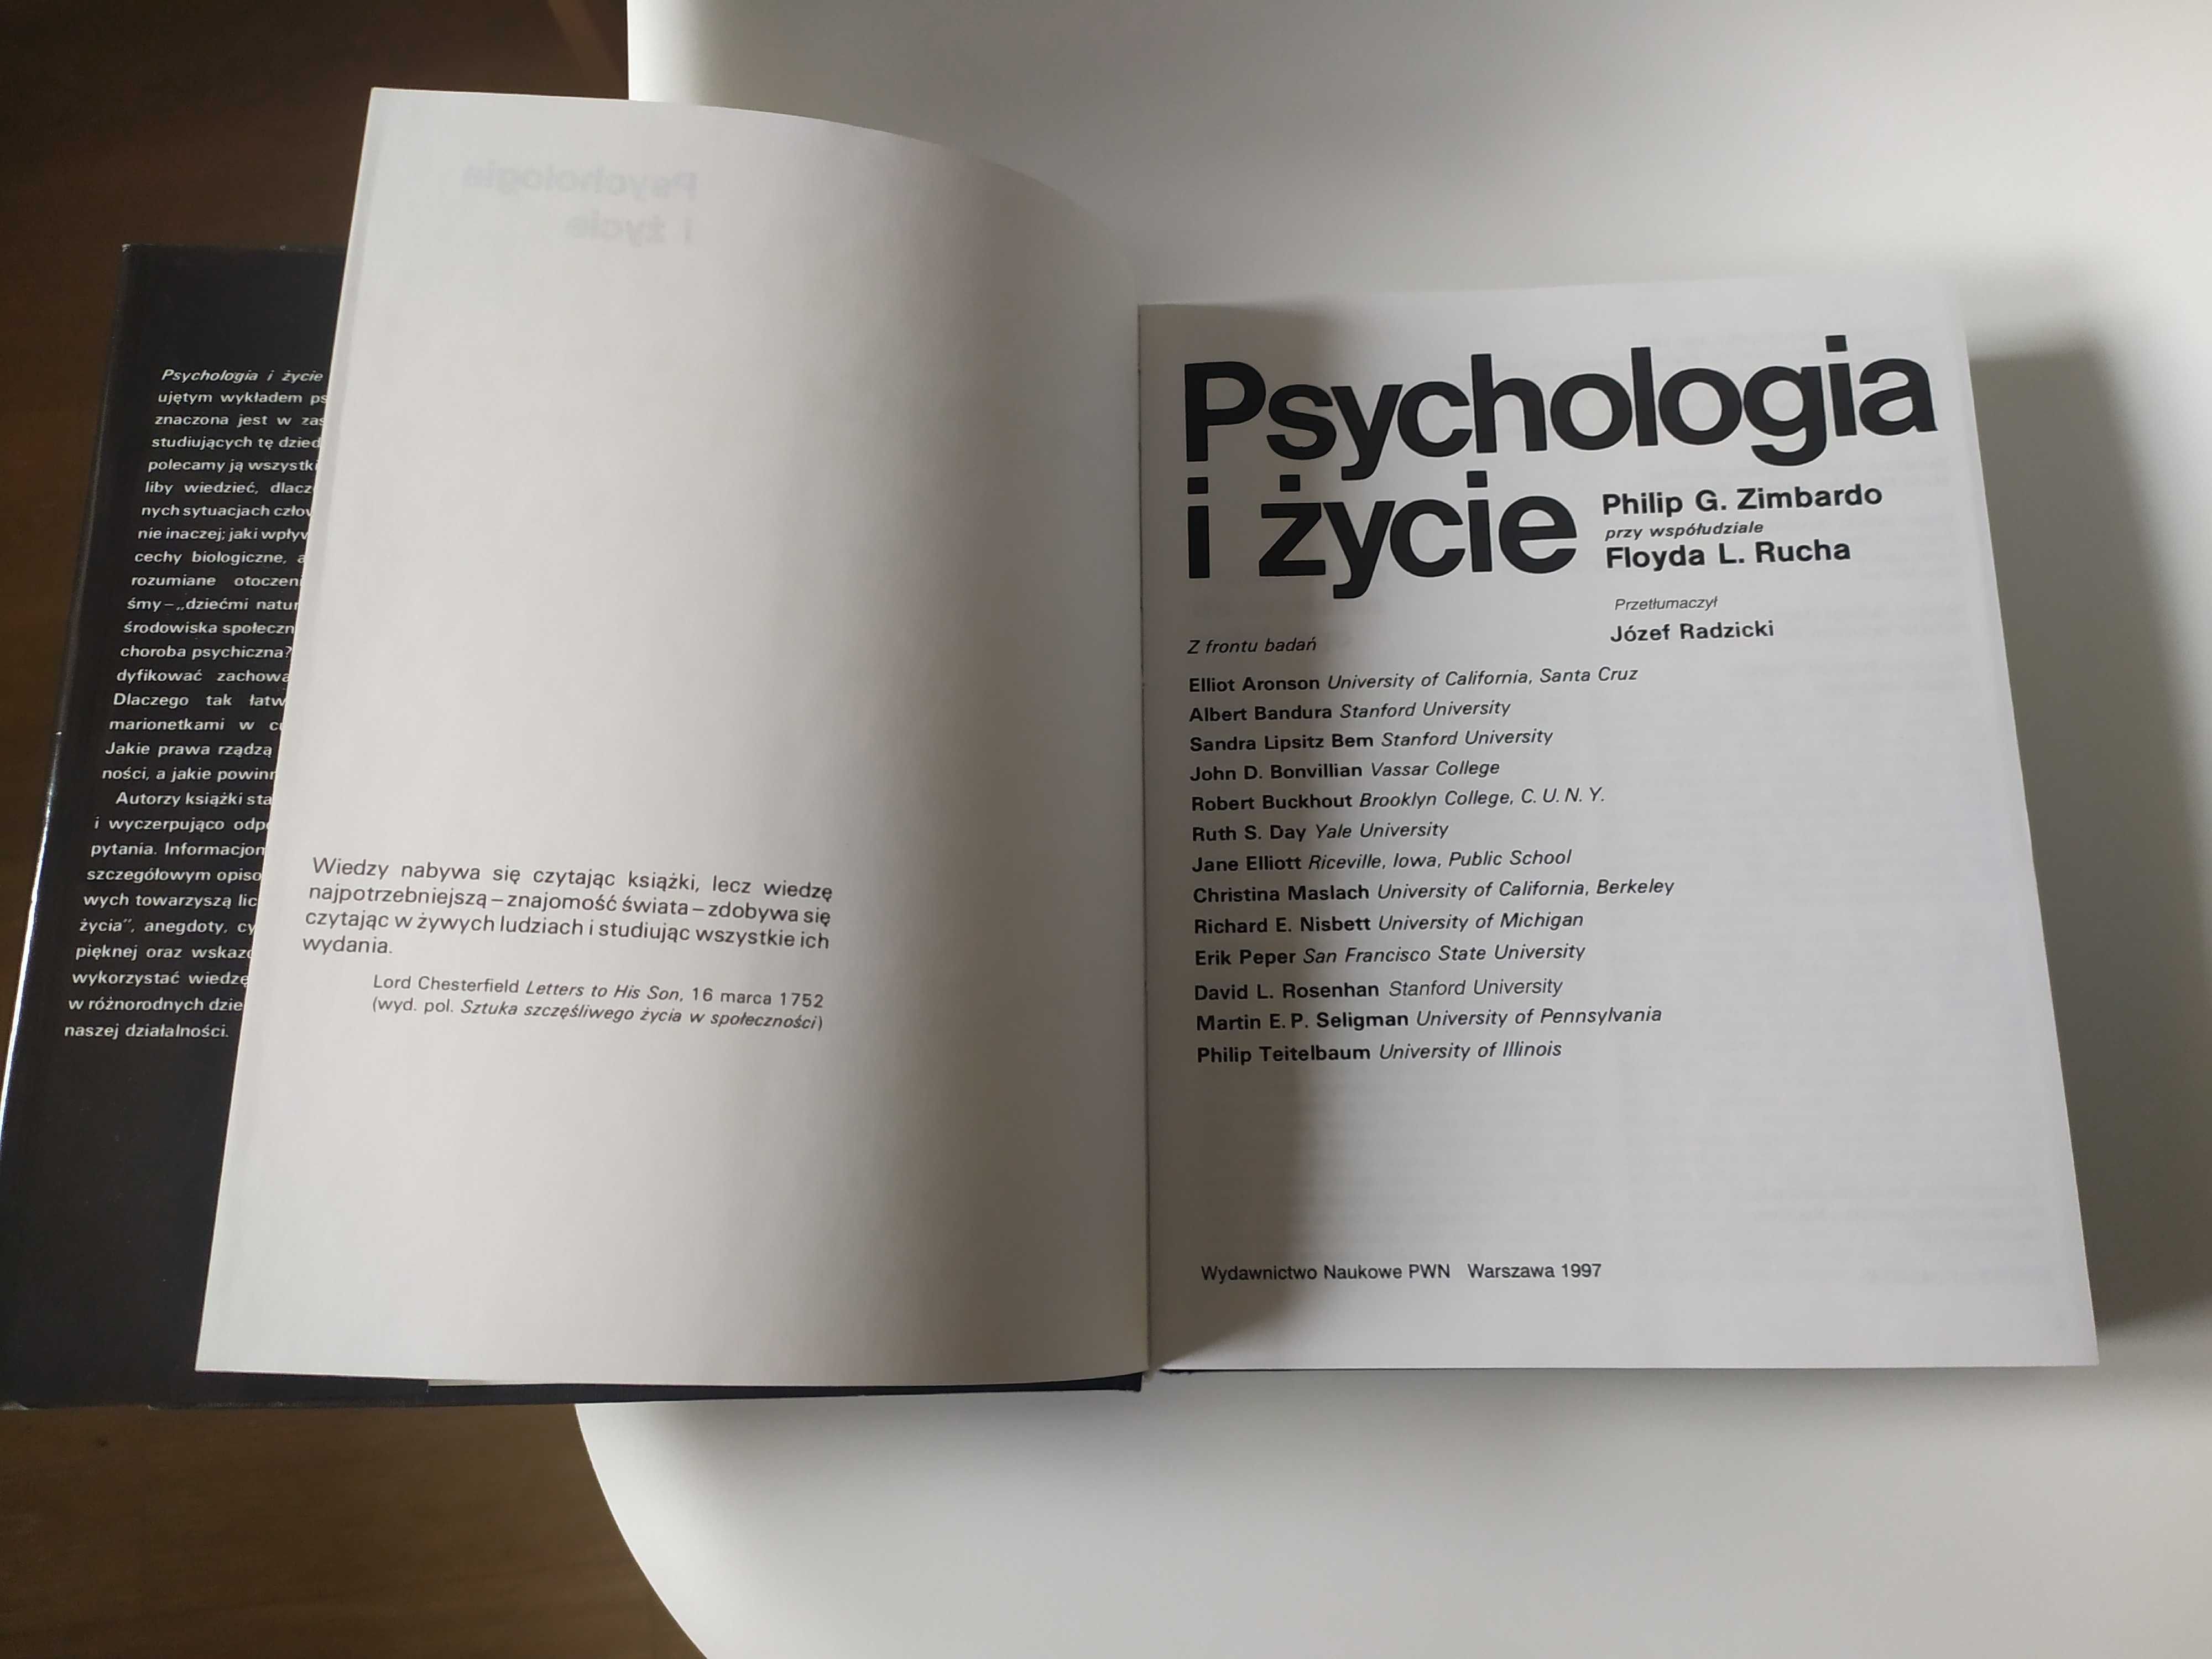 Psychologia i życie Philip G. Zimbardo Floyd L. Ruch. Nowa